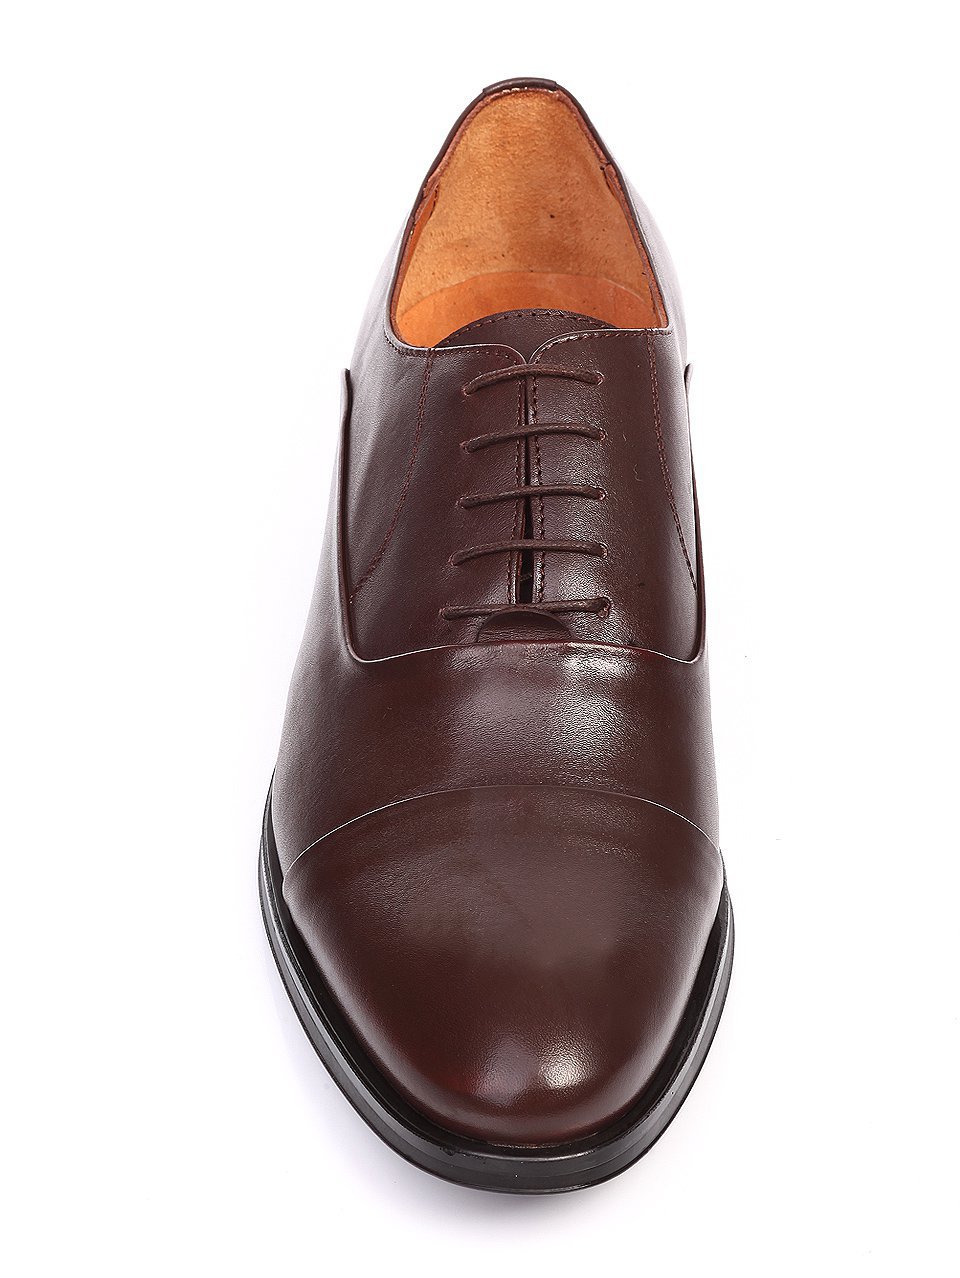 Официални мъжки обувки от естествена кожа в кафяво 7AT-16895 brown